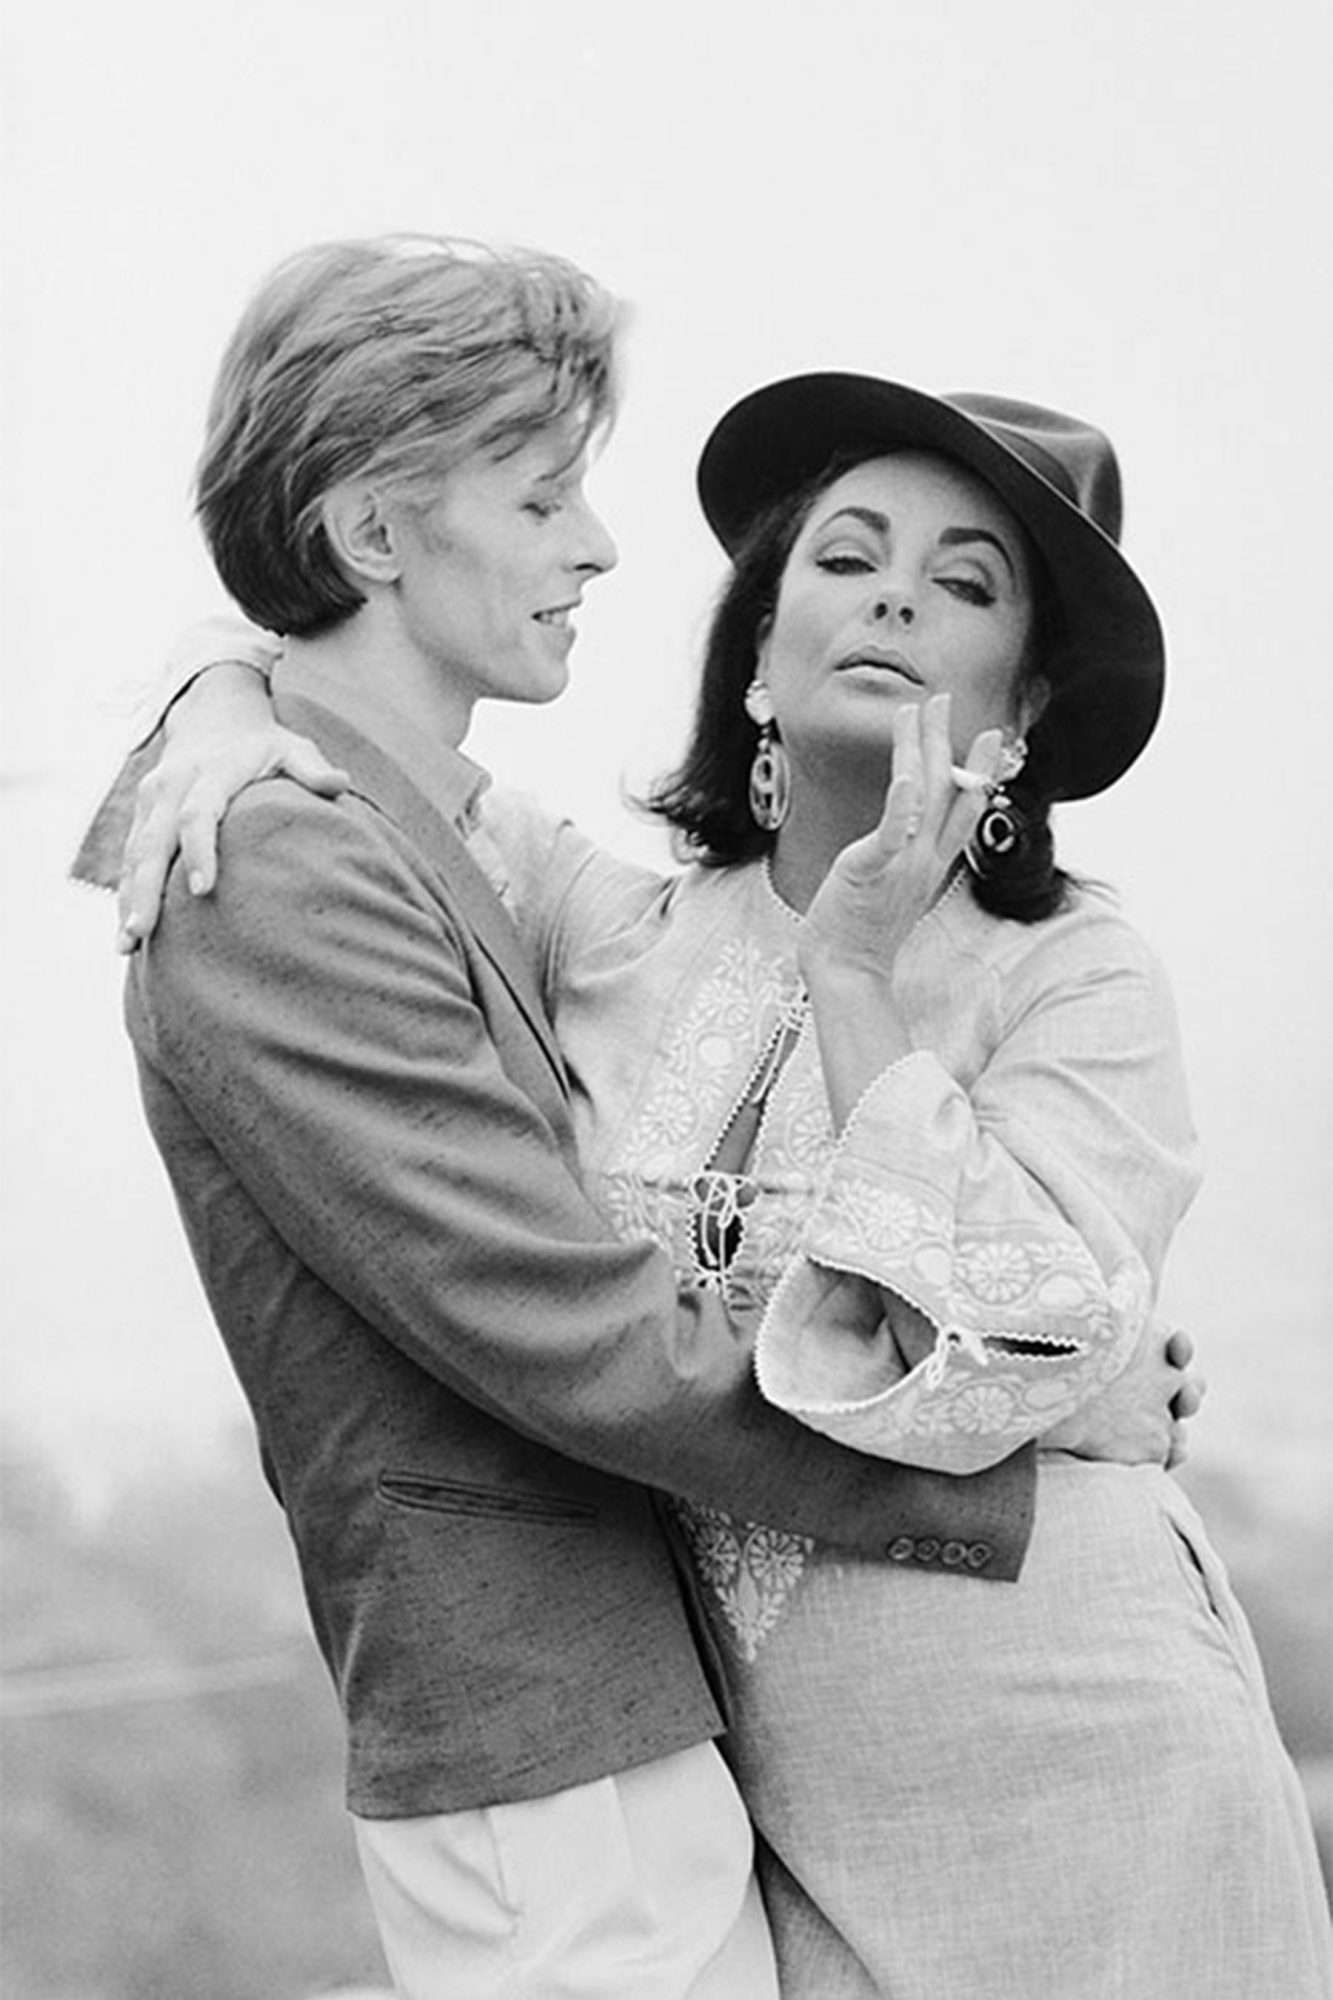 David Bowie and Elizabeth Taylor